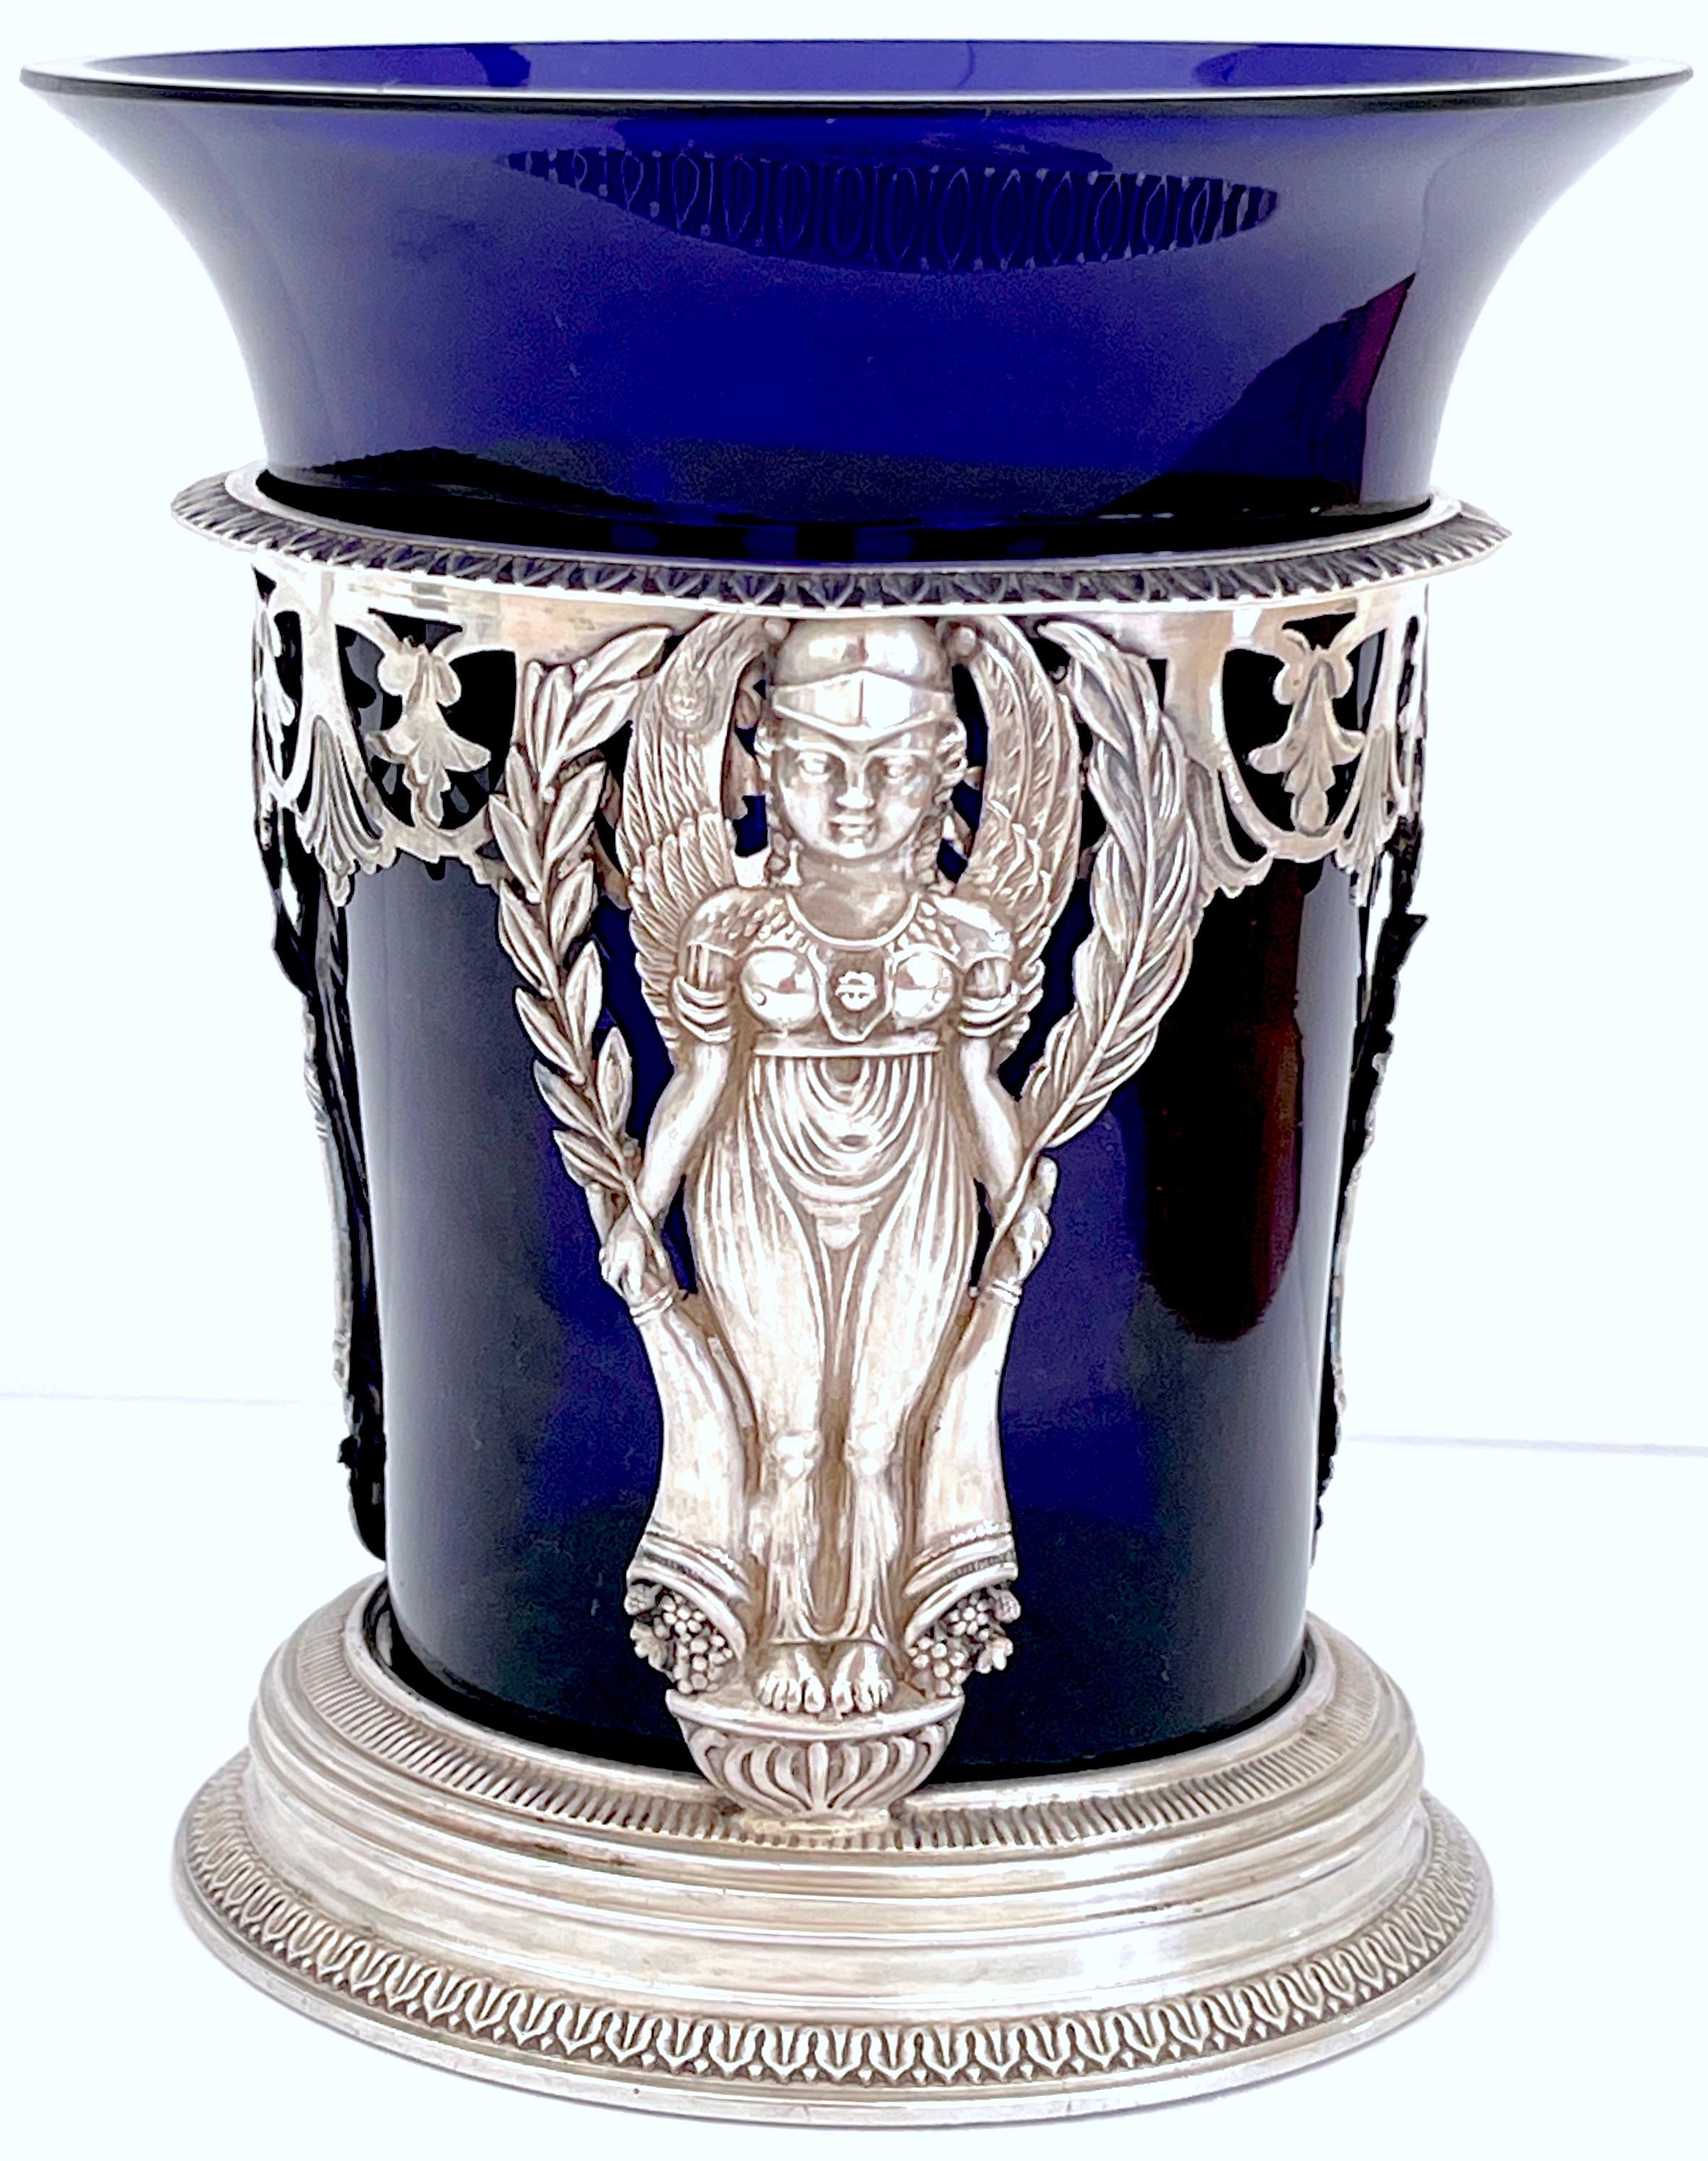 Vase aus Silber und kobaltfarbenem Glas aus dem 18. Jahrhundert, Französisch, 1. Republik, Paris 1798 
Gepunzt, die abnehmbare Kobaltglaseinlage ist antik, wahrscheinlich das Original. 

A  Ausgezeichnete Vase aus Silber und Kobaltglas aus dem 18.